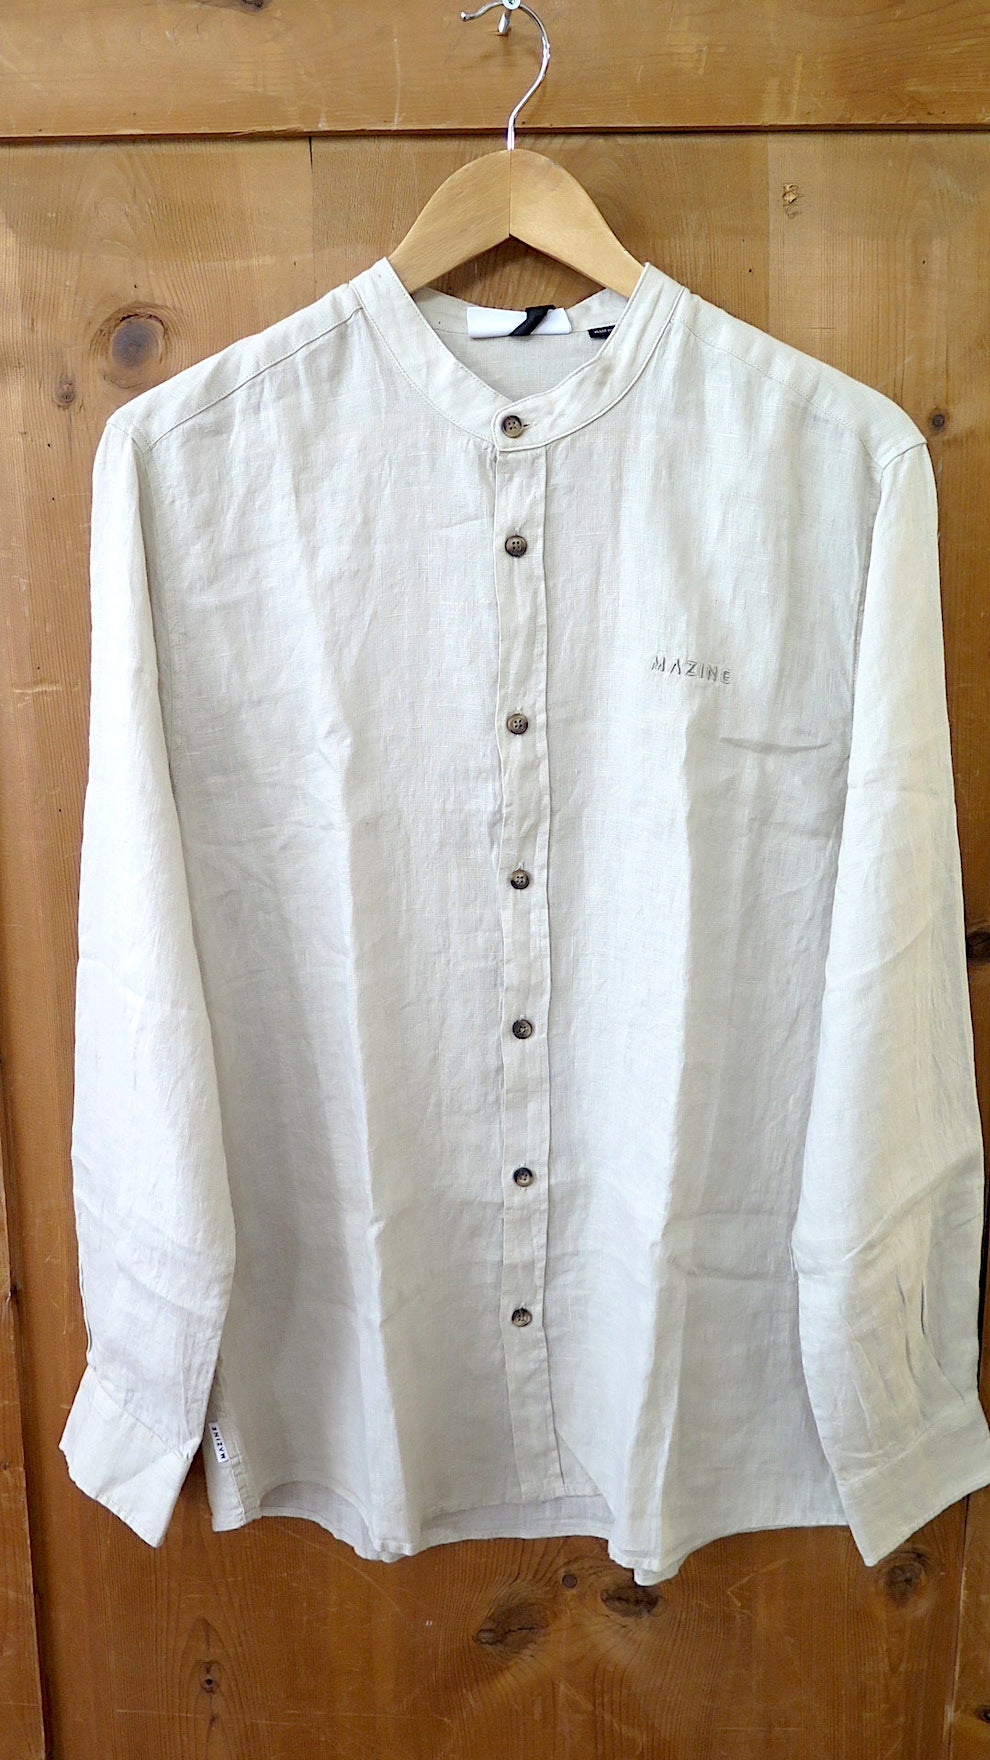 Mazine - Altona Linen Shirt - Eggshell